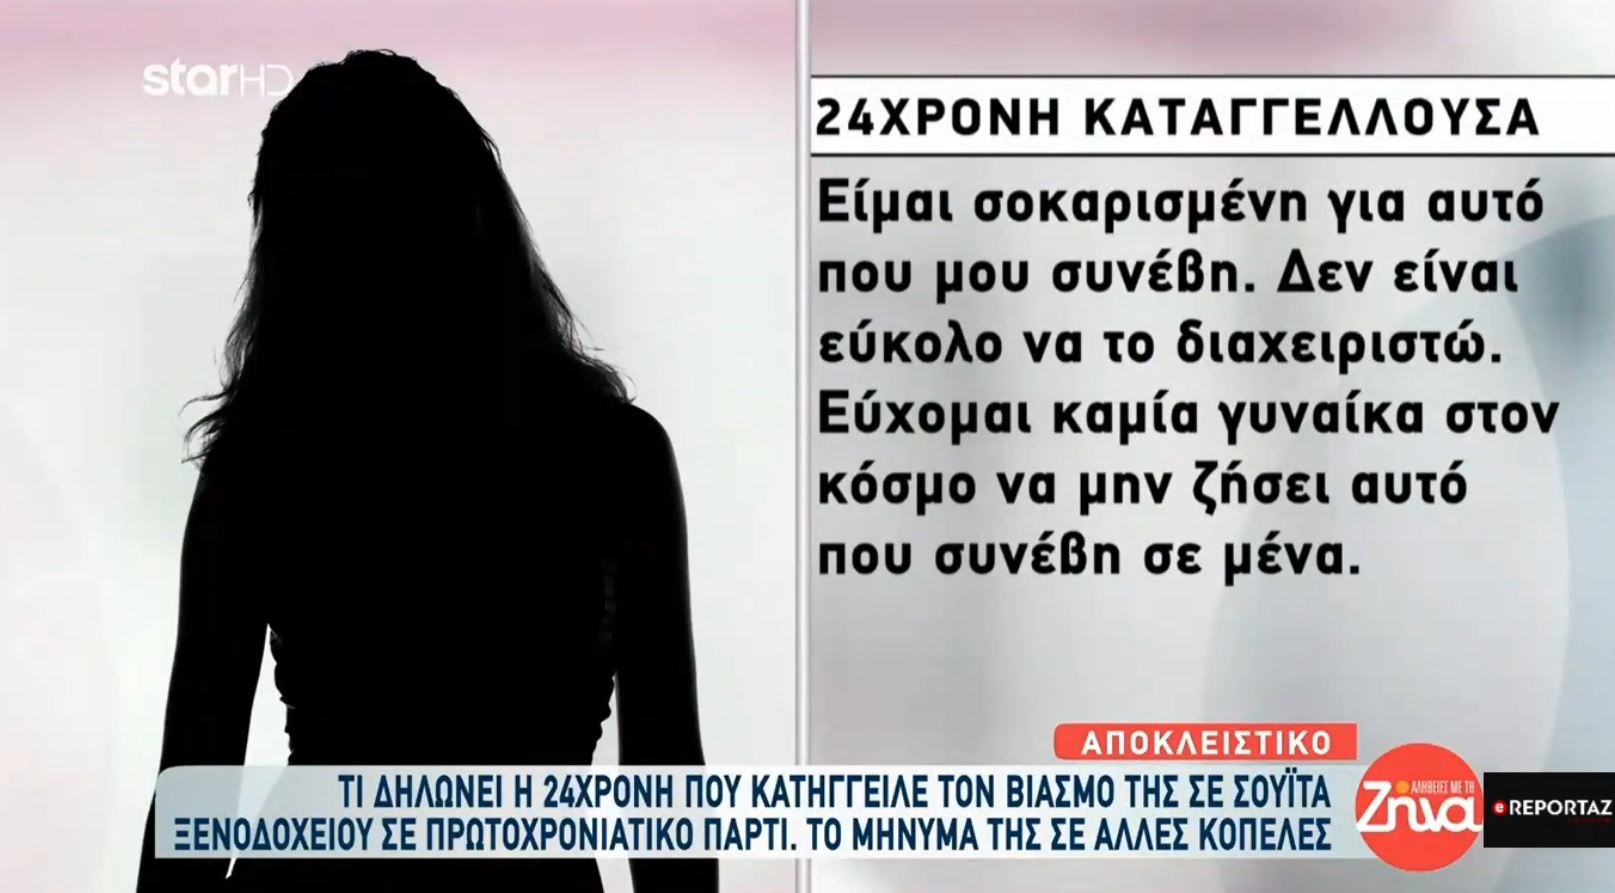 Καταγγελία βιασμού στη Θεσσαλονίκη: Έρευνα για κύκλωμα μαστροπείας -Tι λέει η 24χρονη (βίντεο)